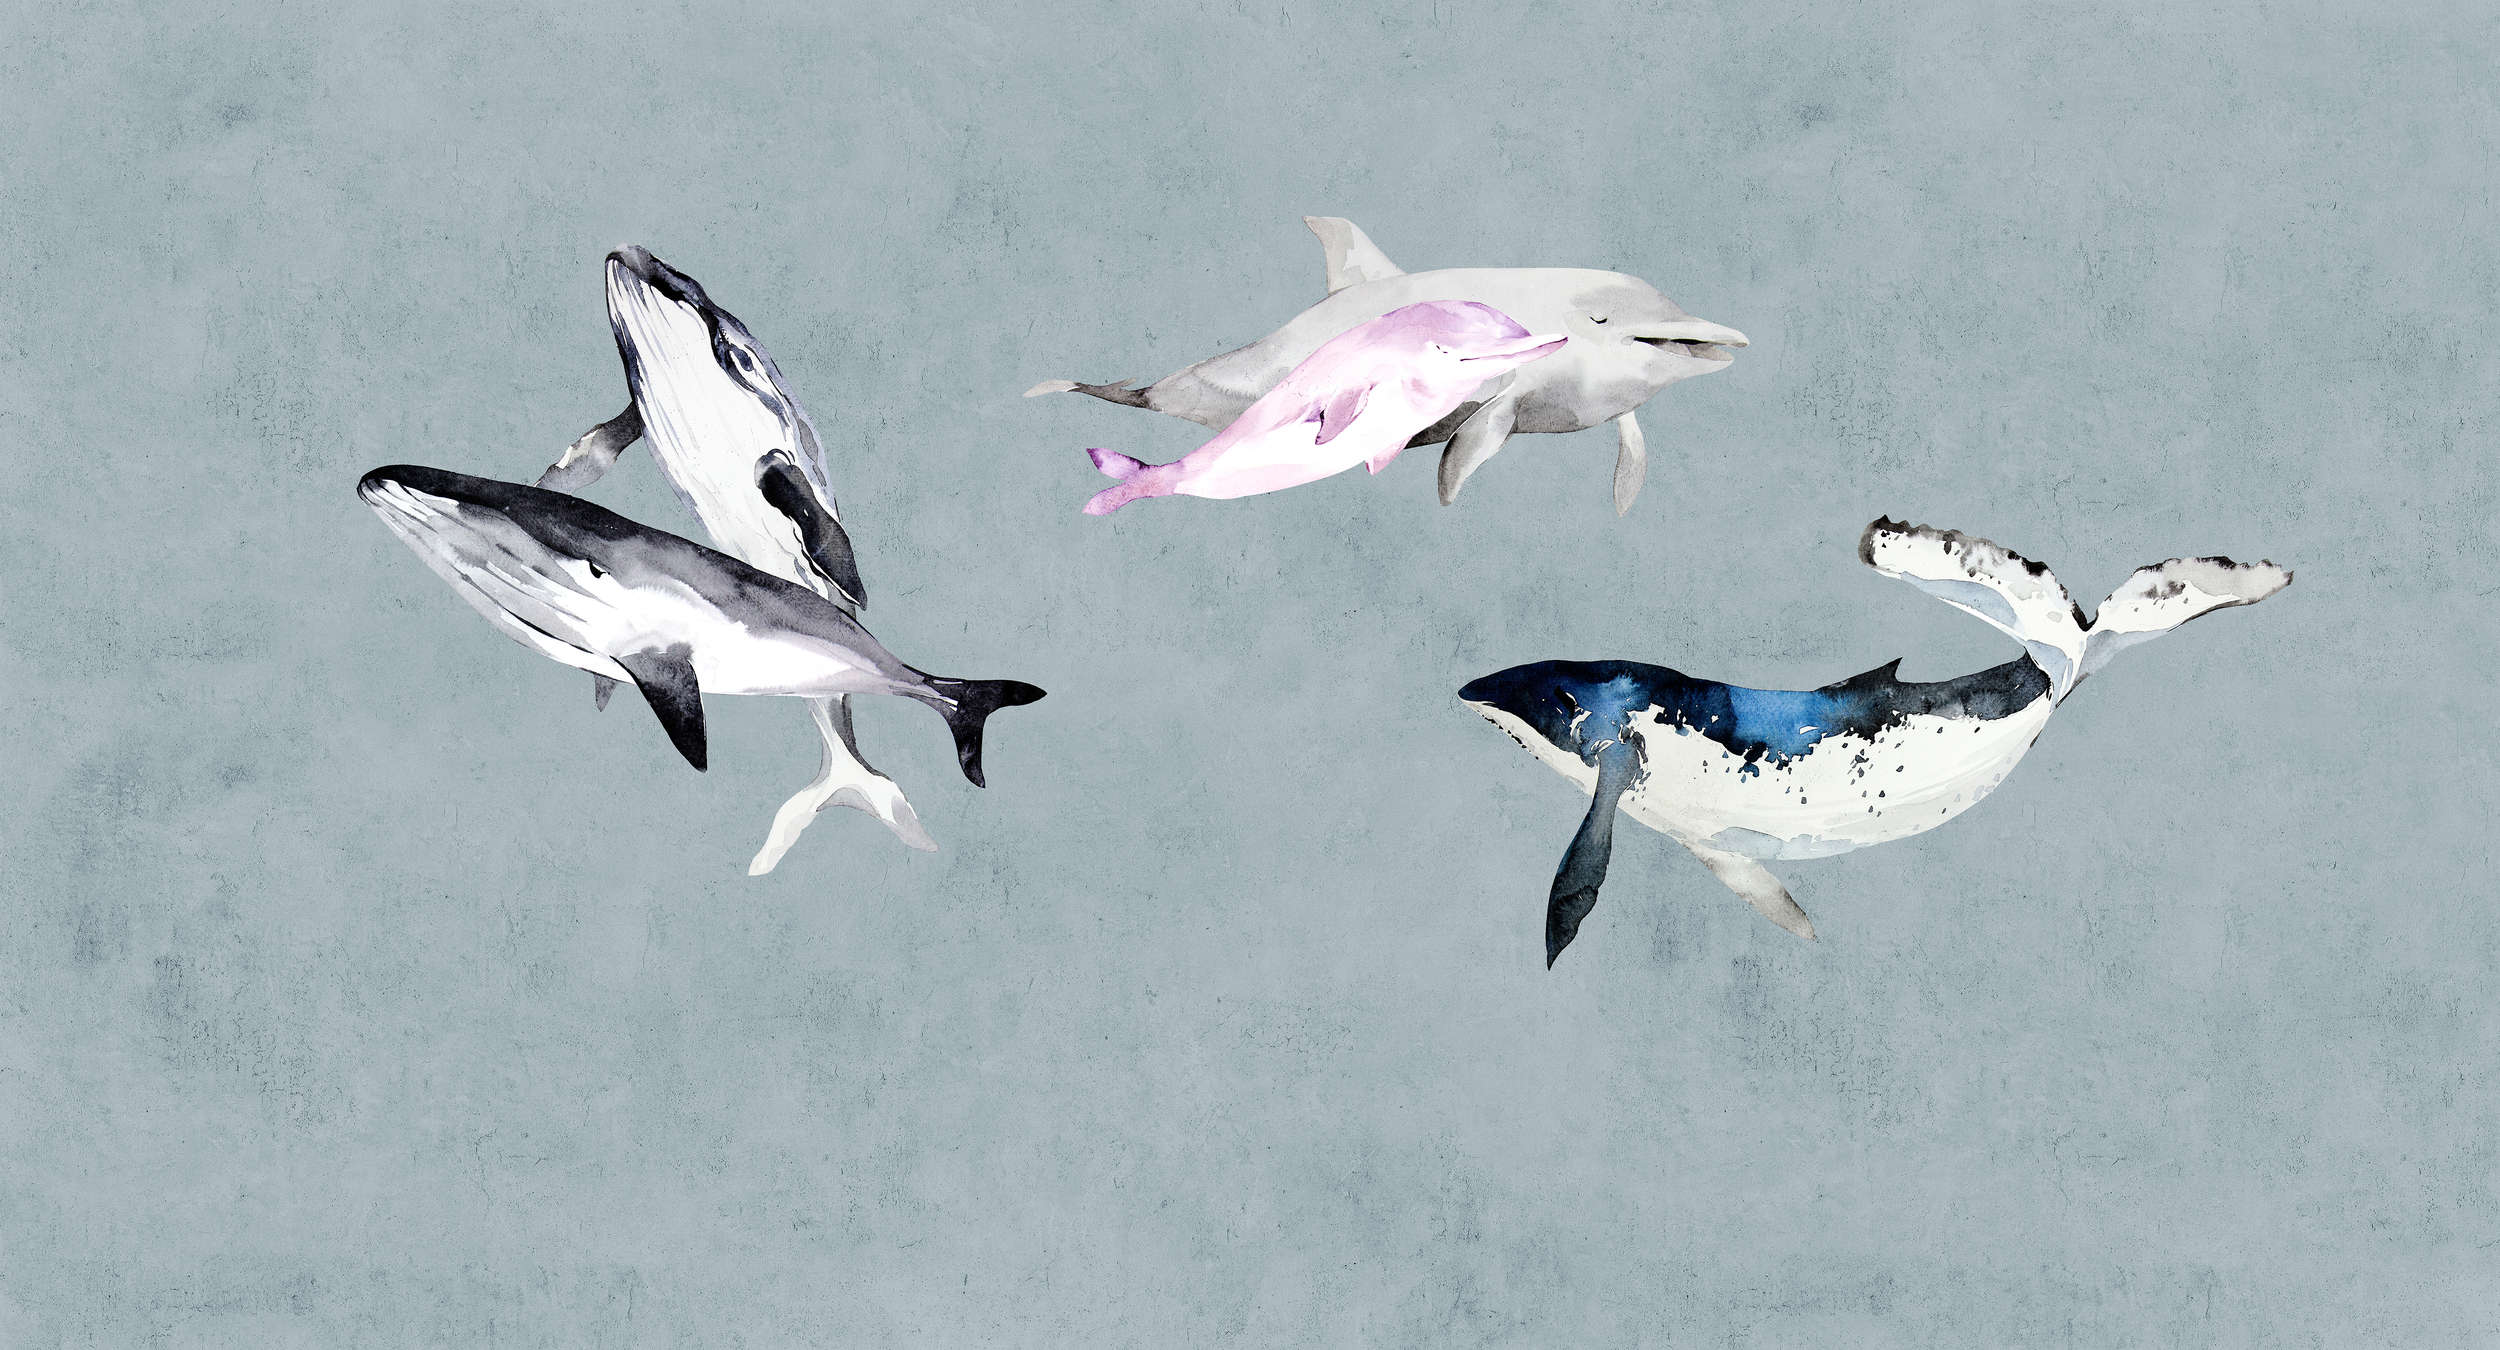             Océanos Cinco 1 - Papel Pintado Acuarela Ballenas y Delfines
        